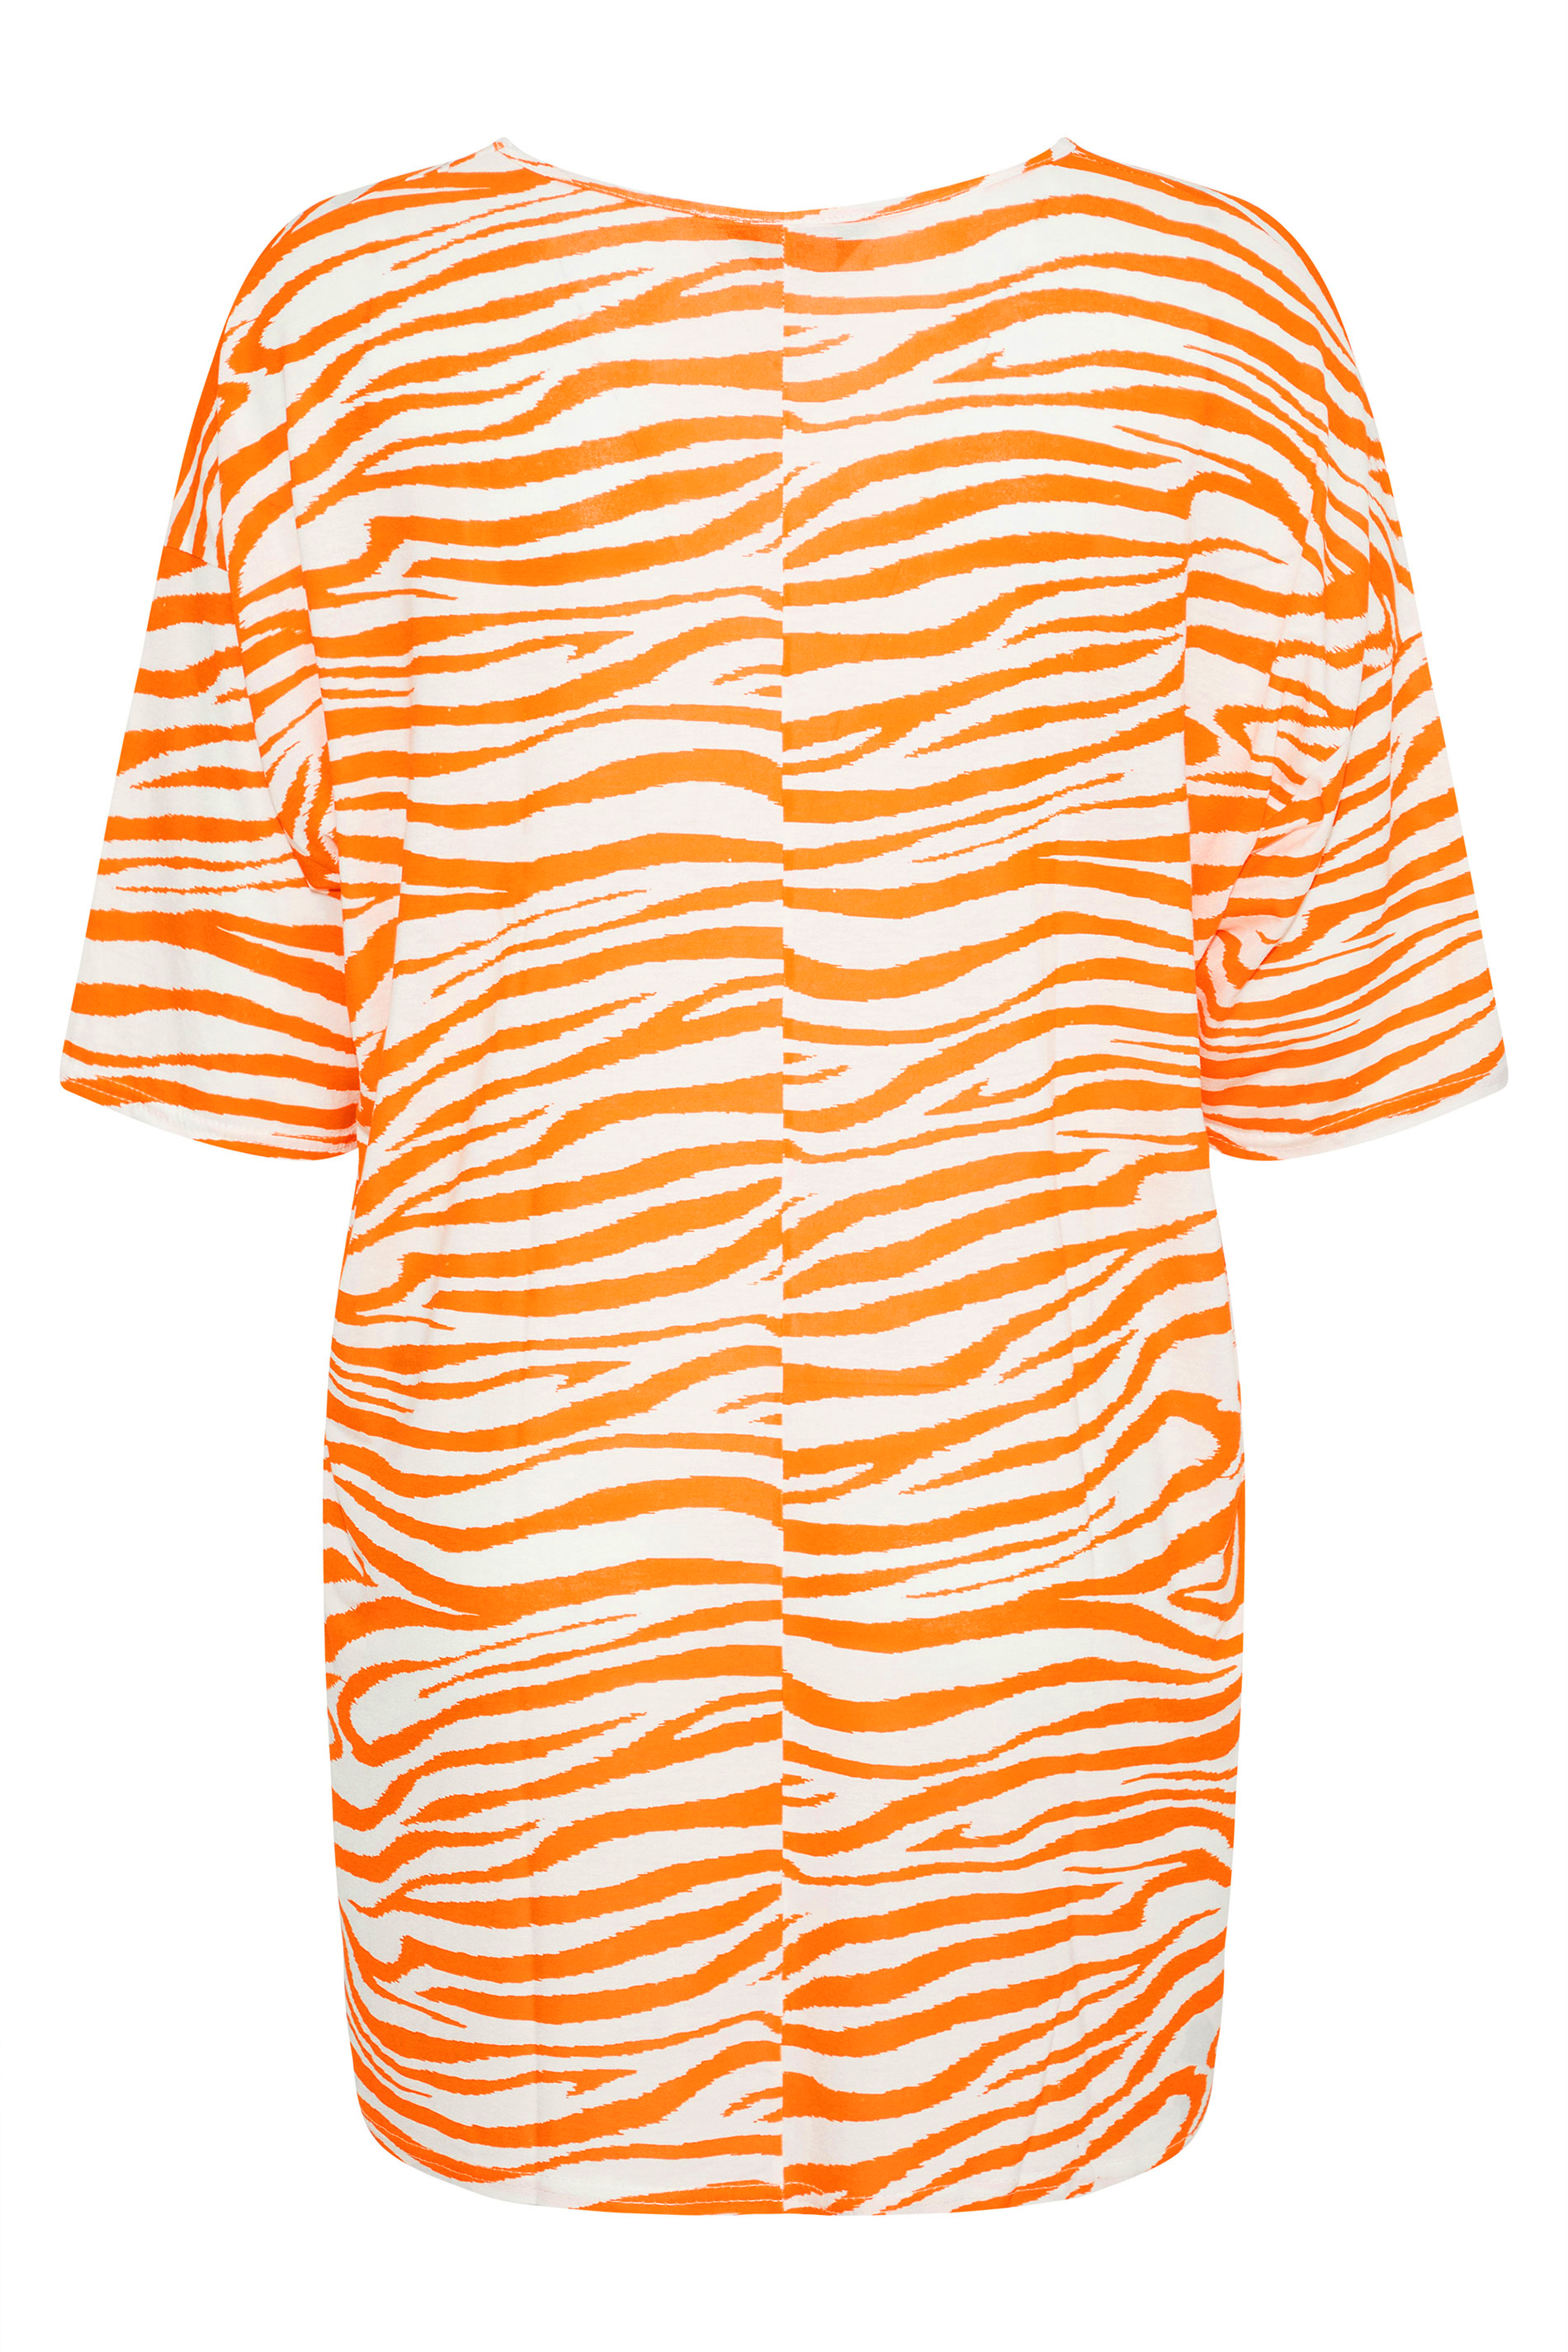 Grande taille  Tops Grande taille  T-Shirts | T-Shirt Orange Zébré Design Oversize - GK01241